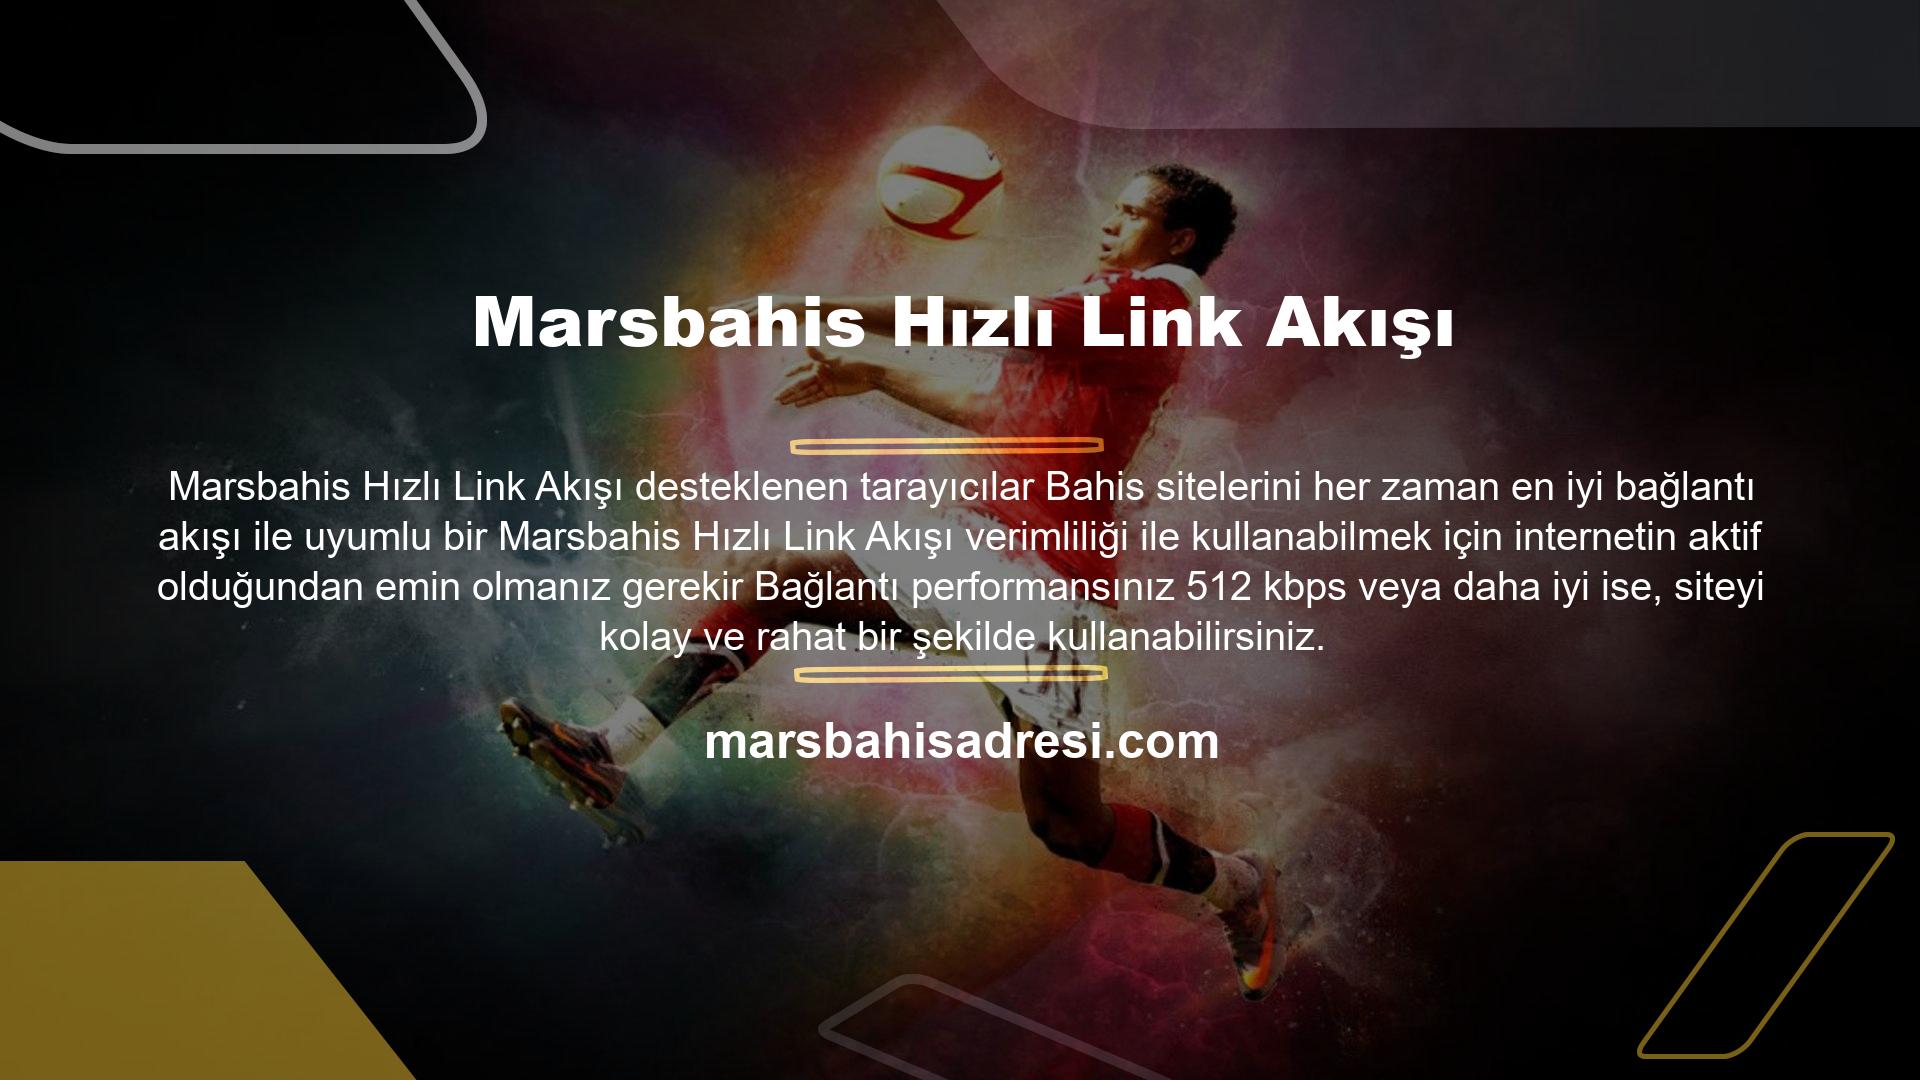 Marsbahis Giriş Adresi
Marsbahis en popüler çevrimiçi casino platformlarından biridir ve bugün çevrimiçi casino Marsbahis giriş adresi yer alan birçok büyük şirkete hizmet vermektedir